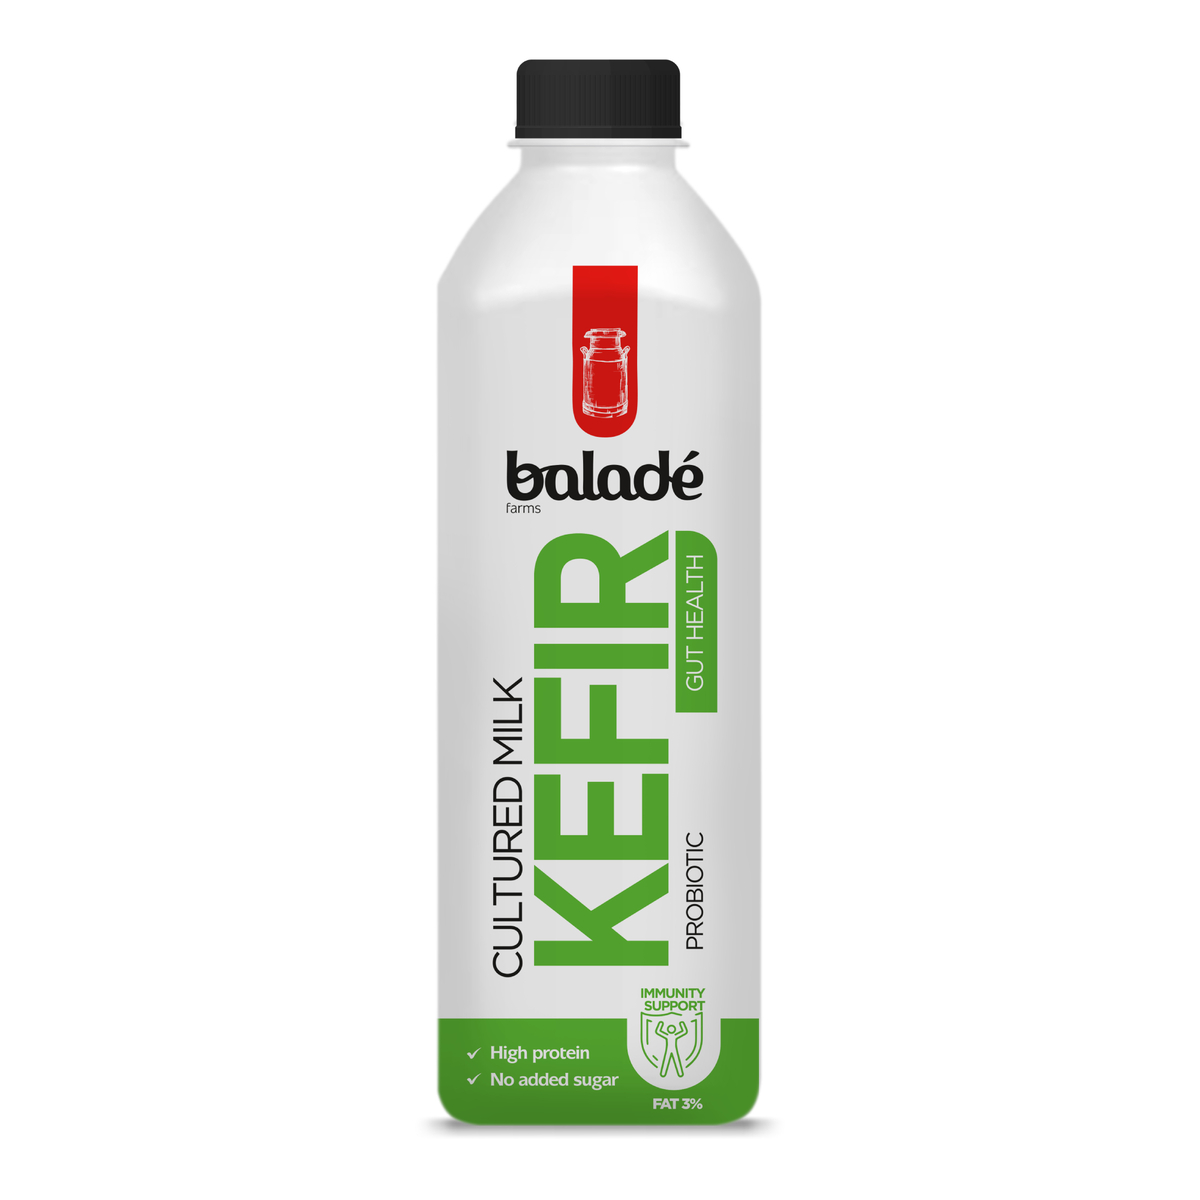 Balade Kefir Cultured Milk 1 Litre